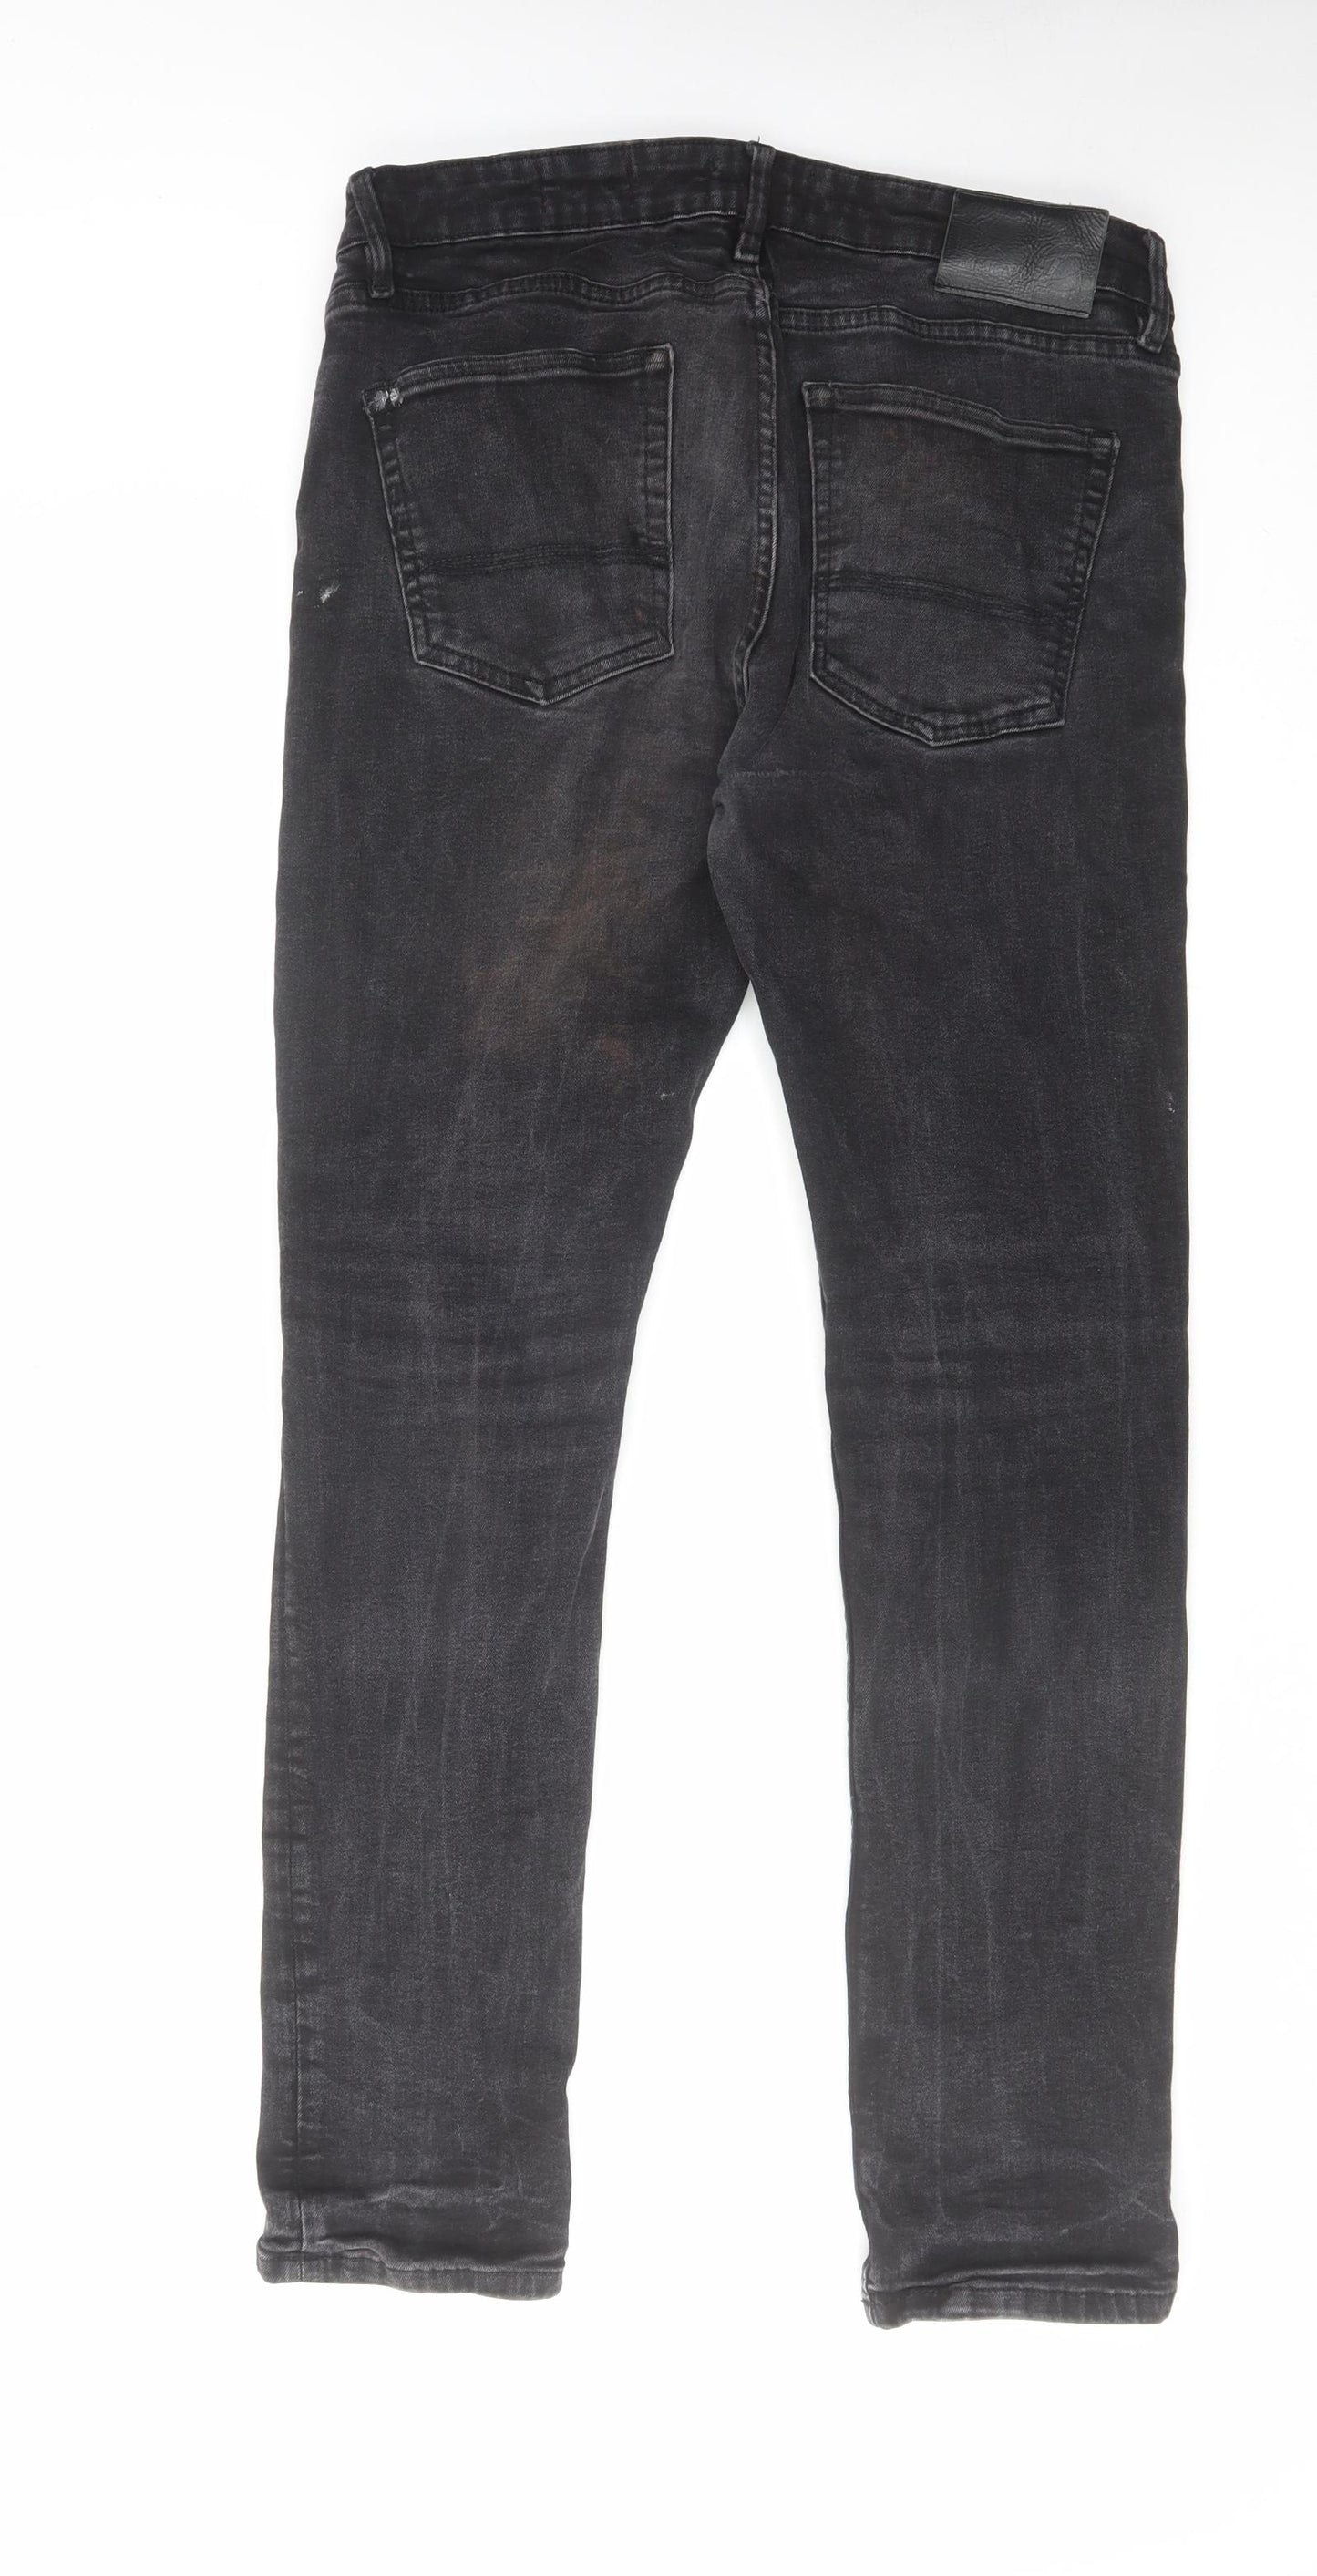 DML Jeans Mens Black Cotton Skinny Jeans Size 34 in L30 in Regular Zip